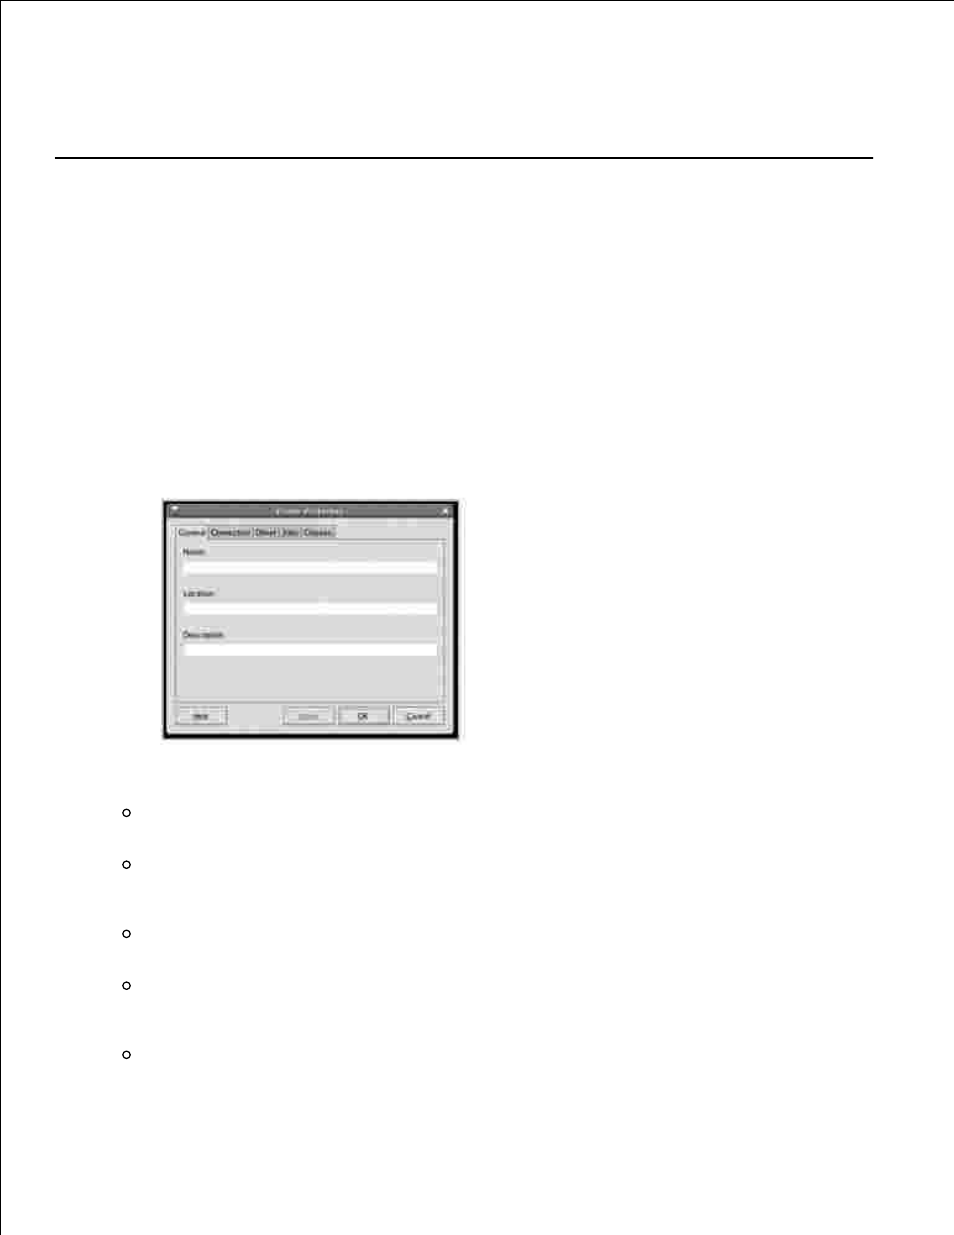 Configurazione delle proprietà della stampante | Dell 2335DN Manuale d'uso | Pagina 220 / 293